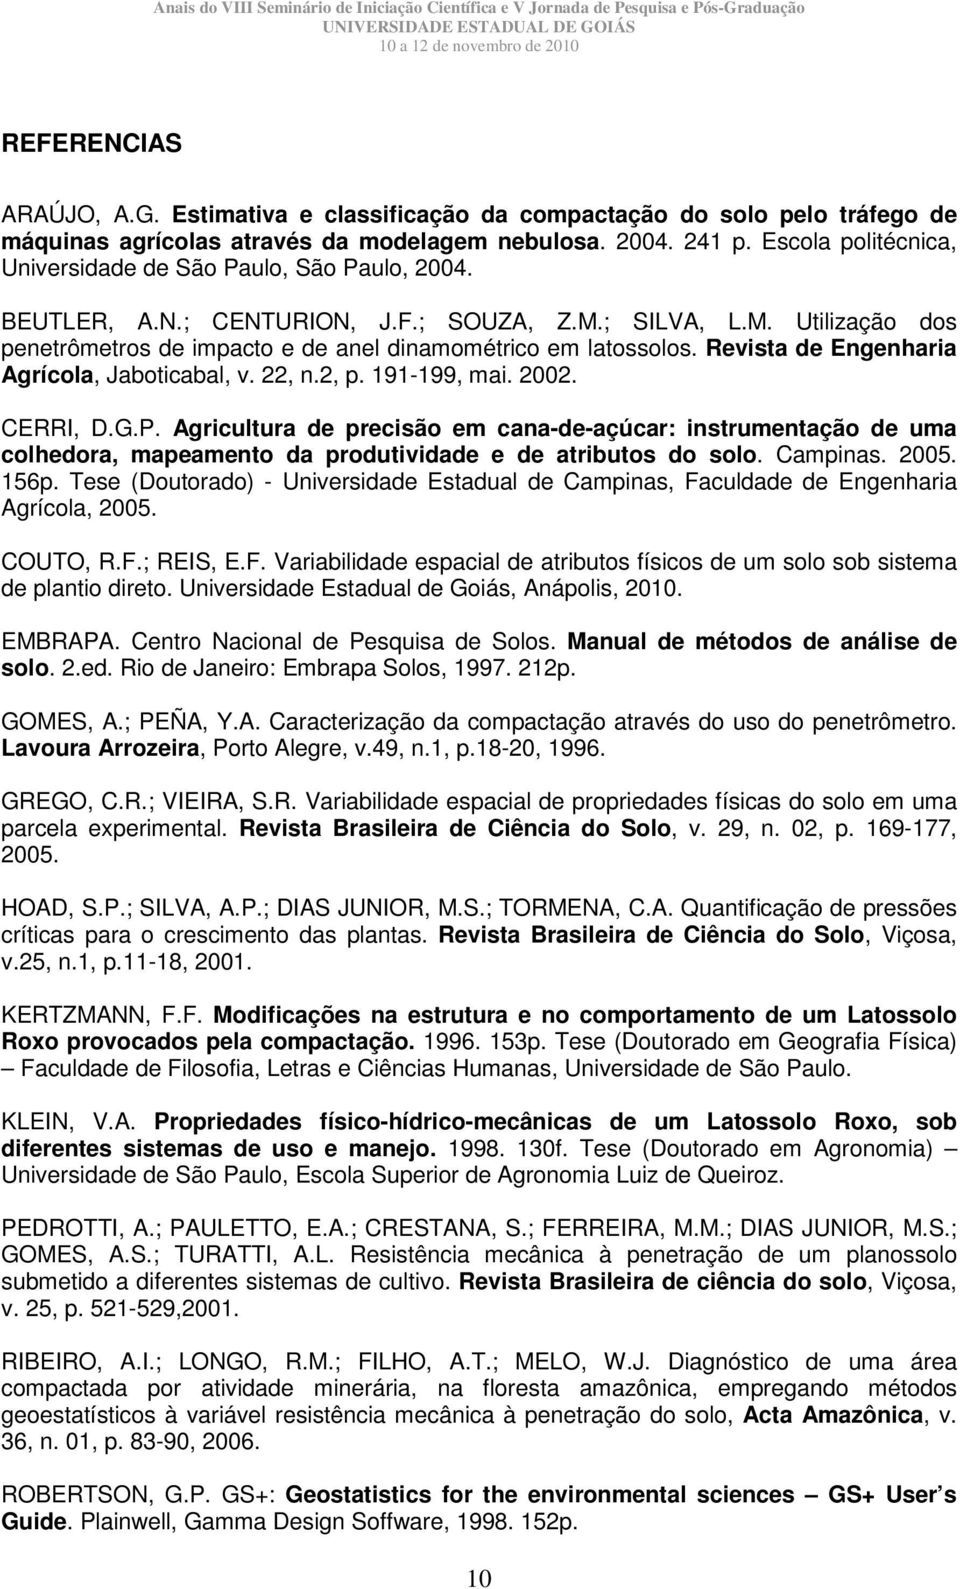 Revista de Engenharia Agrícola, Jaboticabal, v. 22, n.2, p. 191-199, mai. 2002. CERRI, D.G.P.